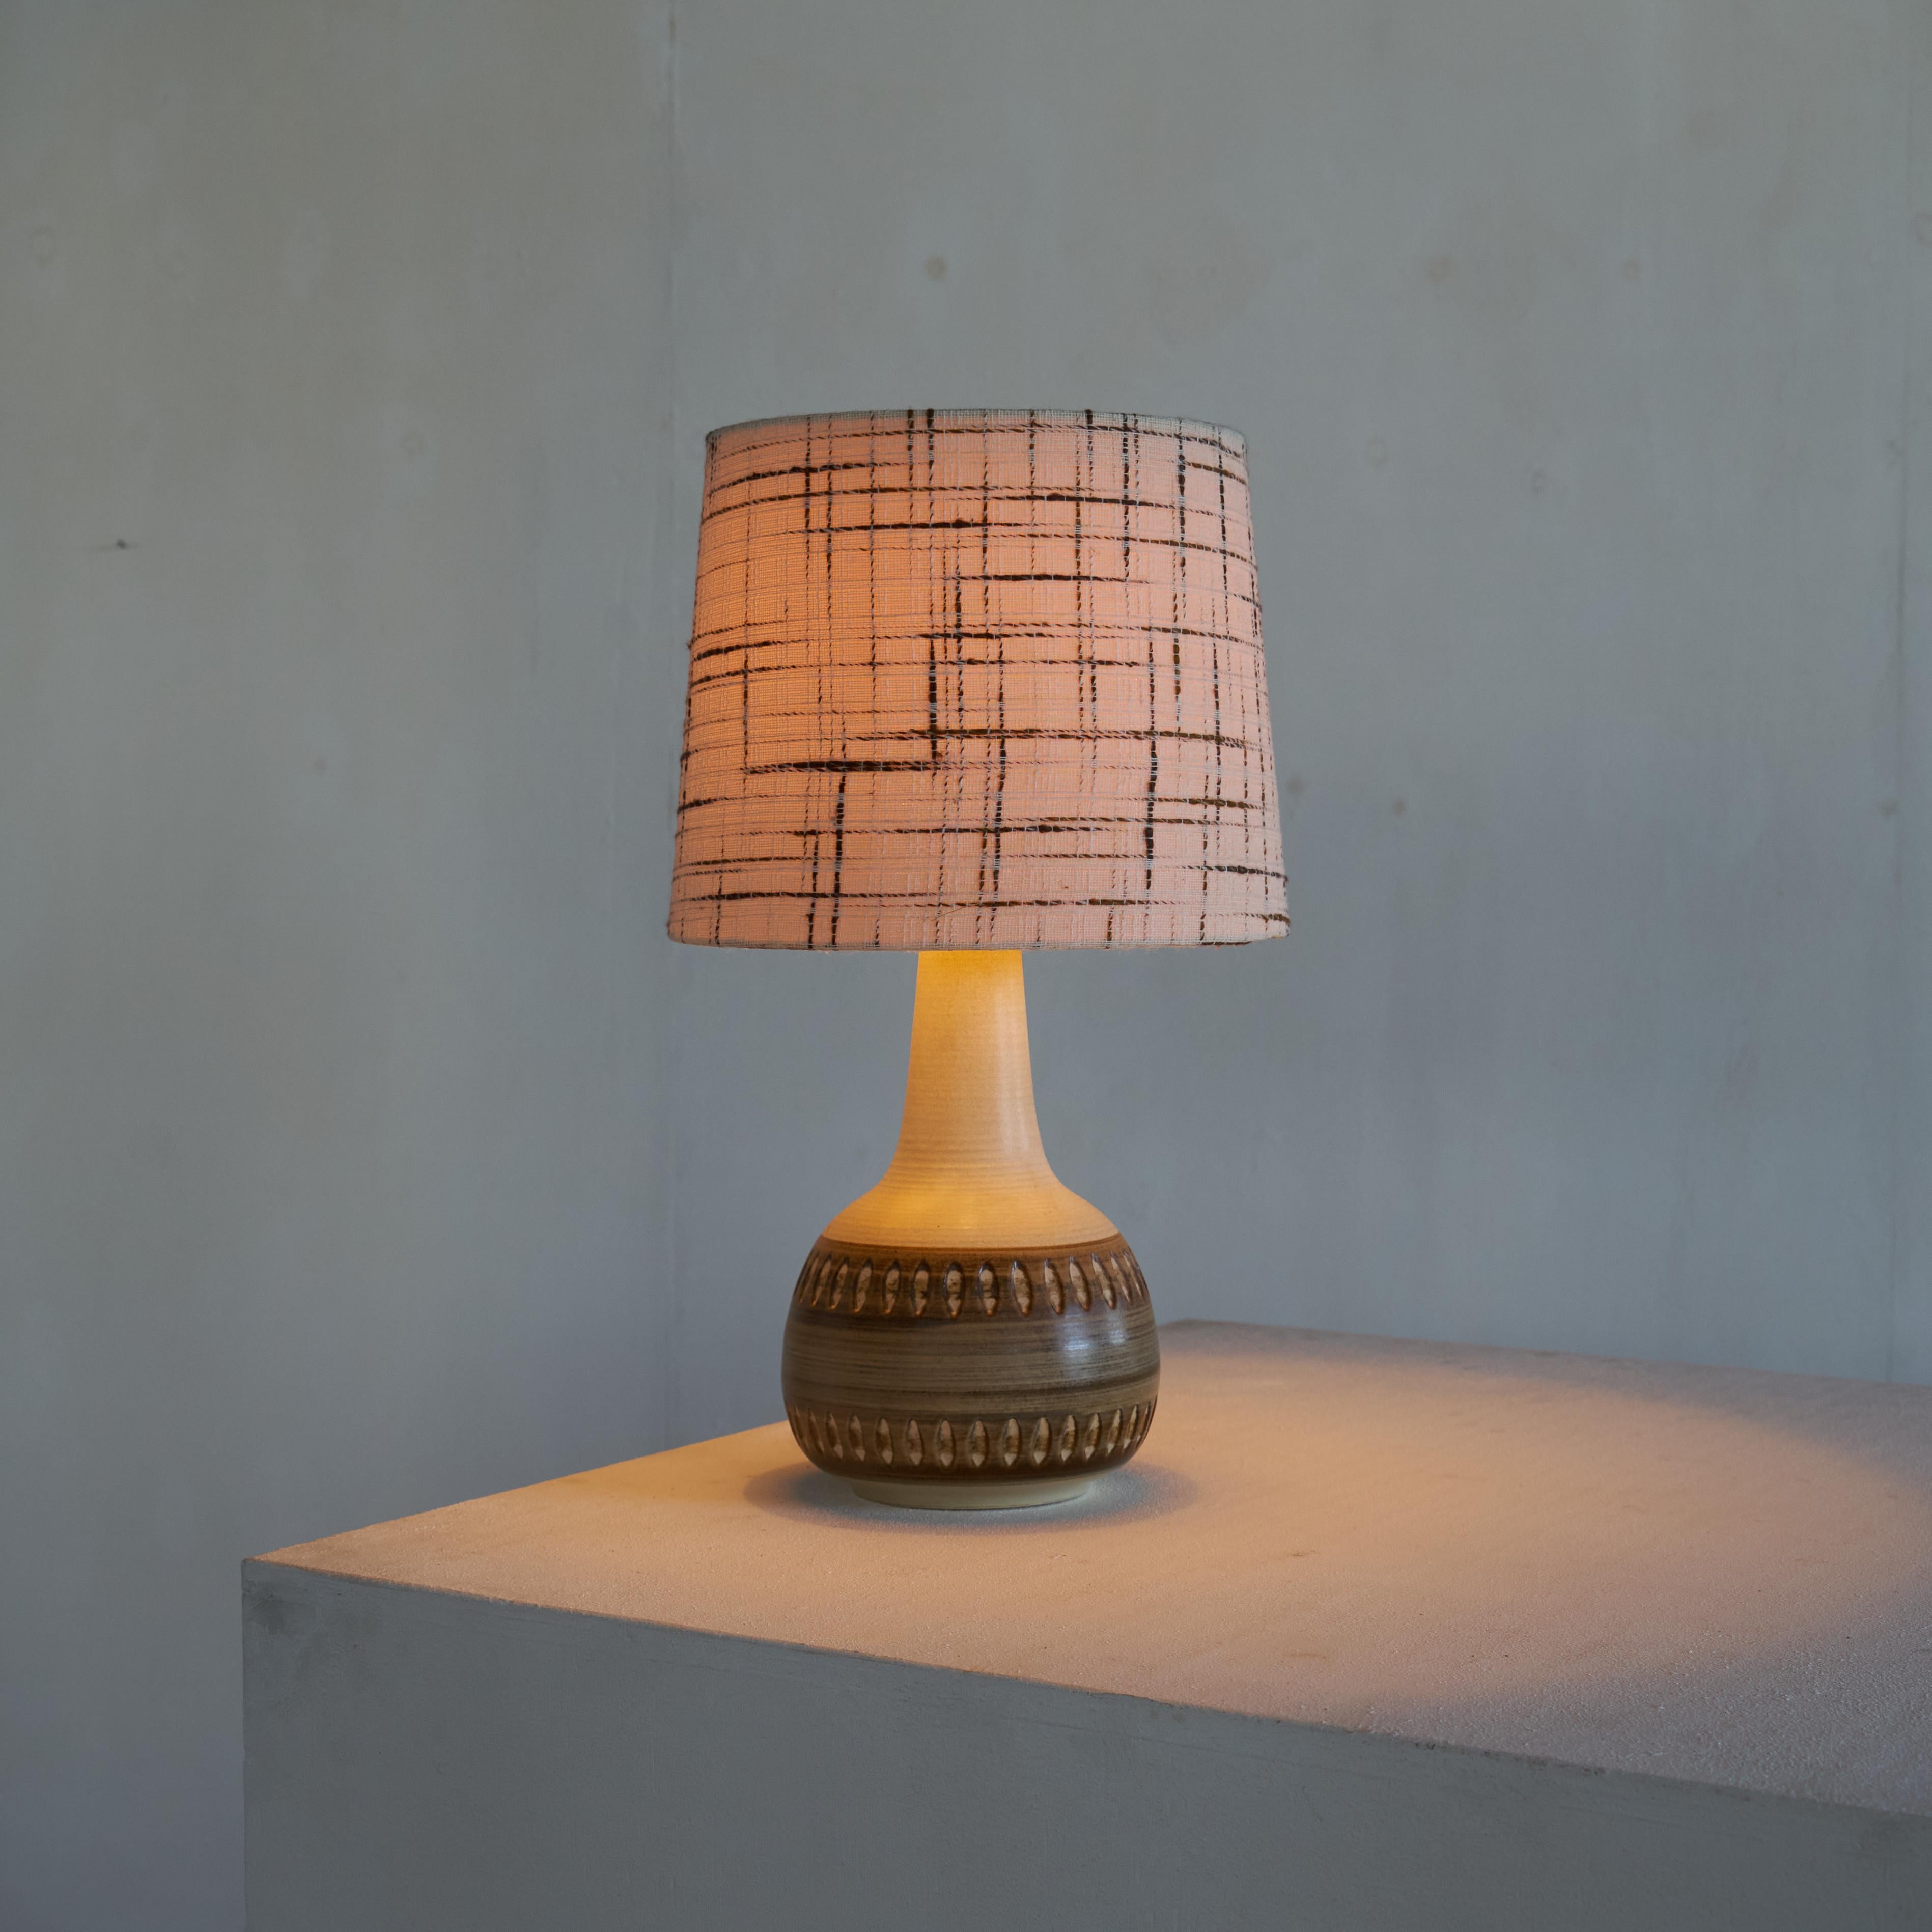 Lampe de table en poterie du Studio Søholm Stentøj avec abat-jour original, Danemark, années 1960.

Magnifique lampe de table en poterie de studio du milieu du siècle par le célèbre fabricant Søholm du Danemark, réalisée dans les années 1960.